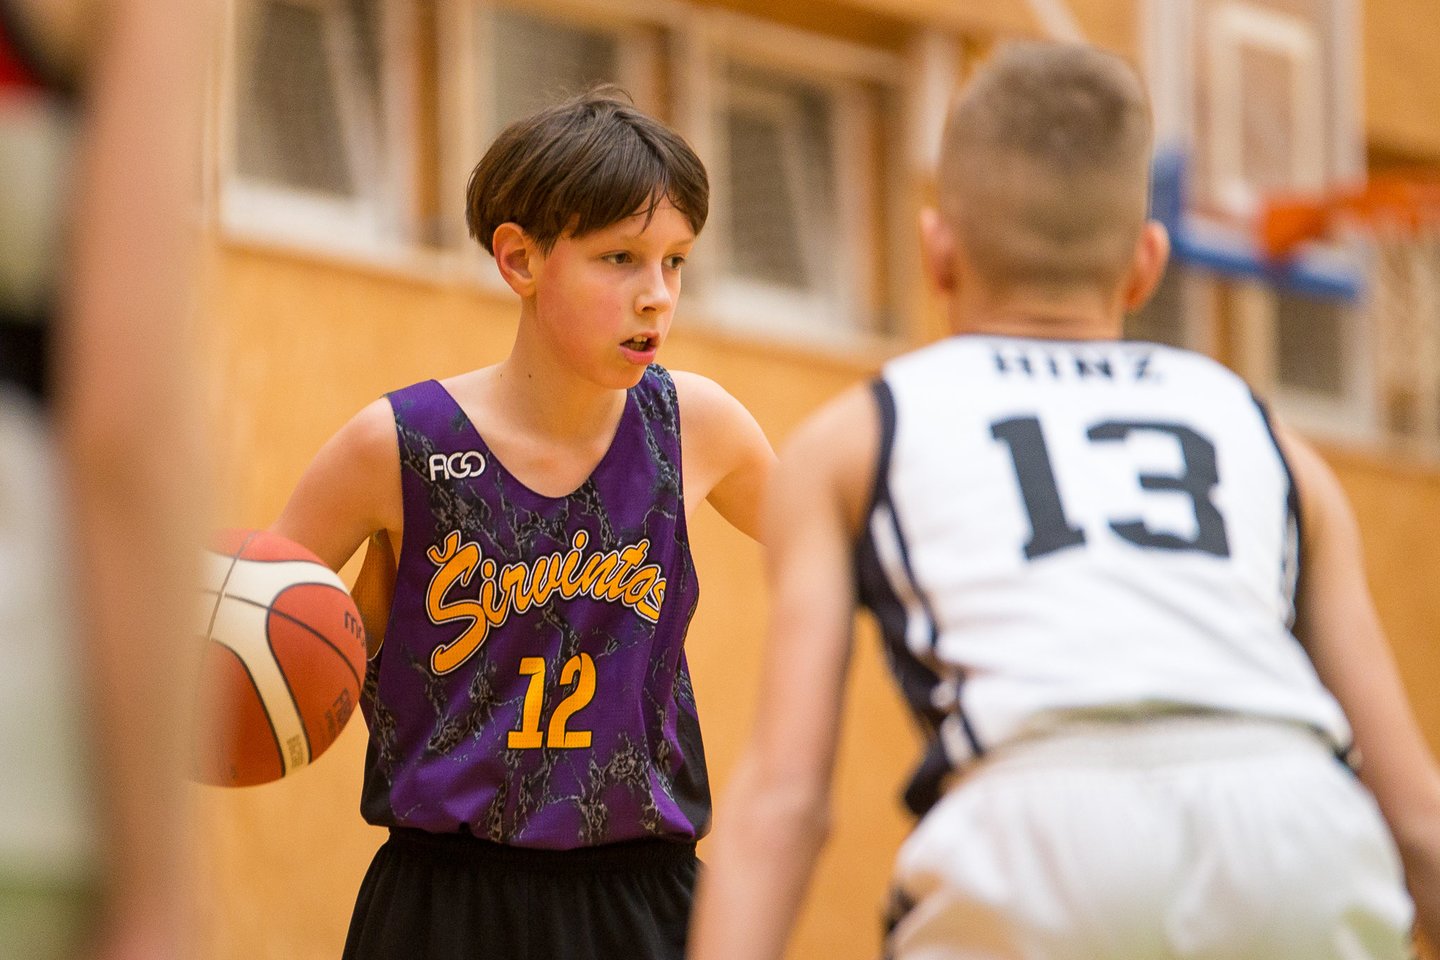 Šį savaitgalį prasideda didžiausias Vilniaus regione moksleivių krepšinio čempionatas „VitirON KIDS“.<br> sostineskl.lt nuotr.